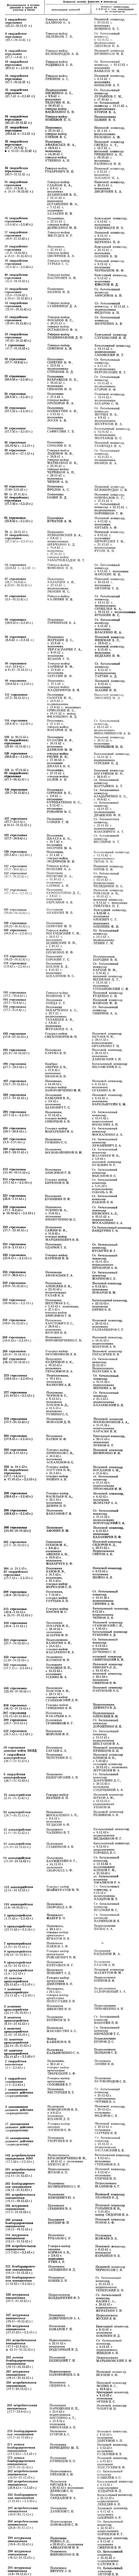 Приложение 3. Командиры, комиссары дивизий, участвовавших в Сталинградской битве